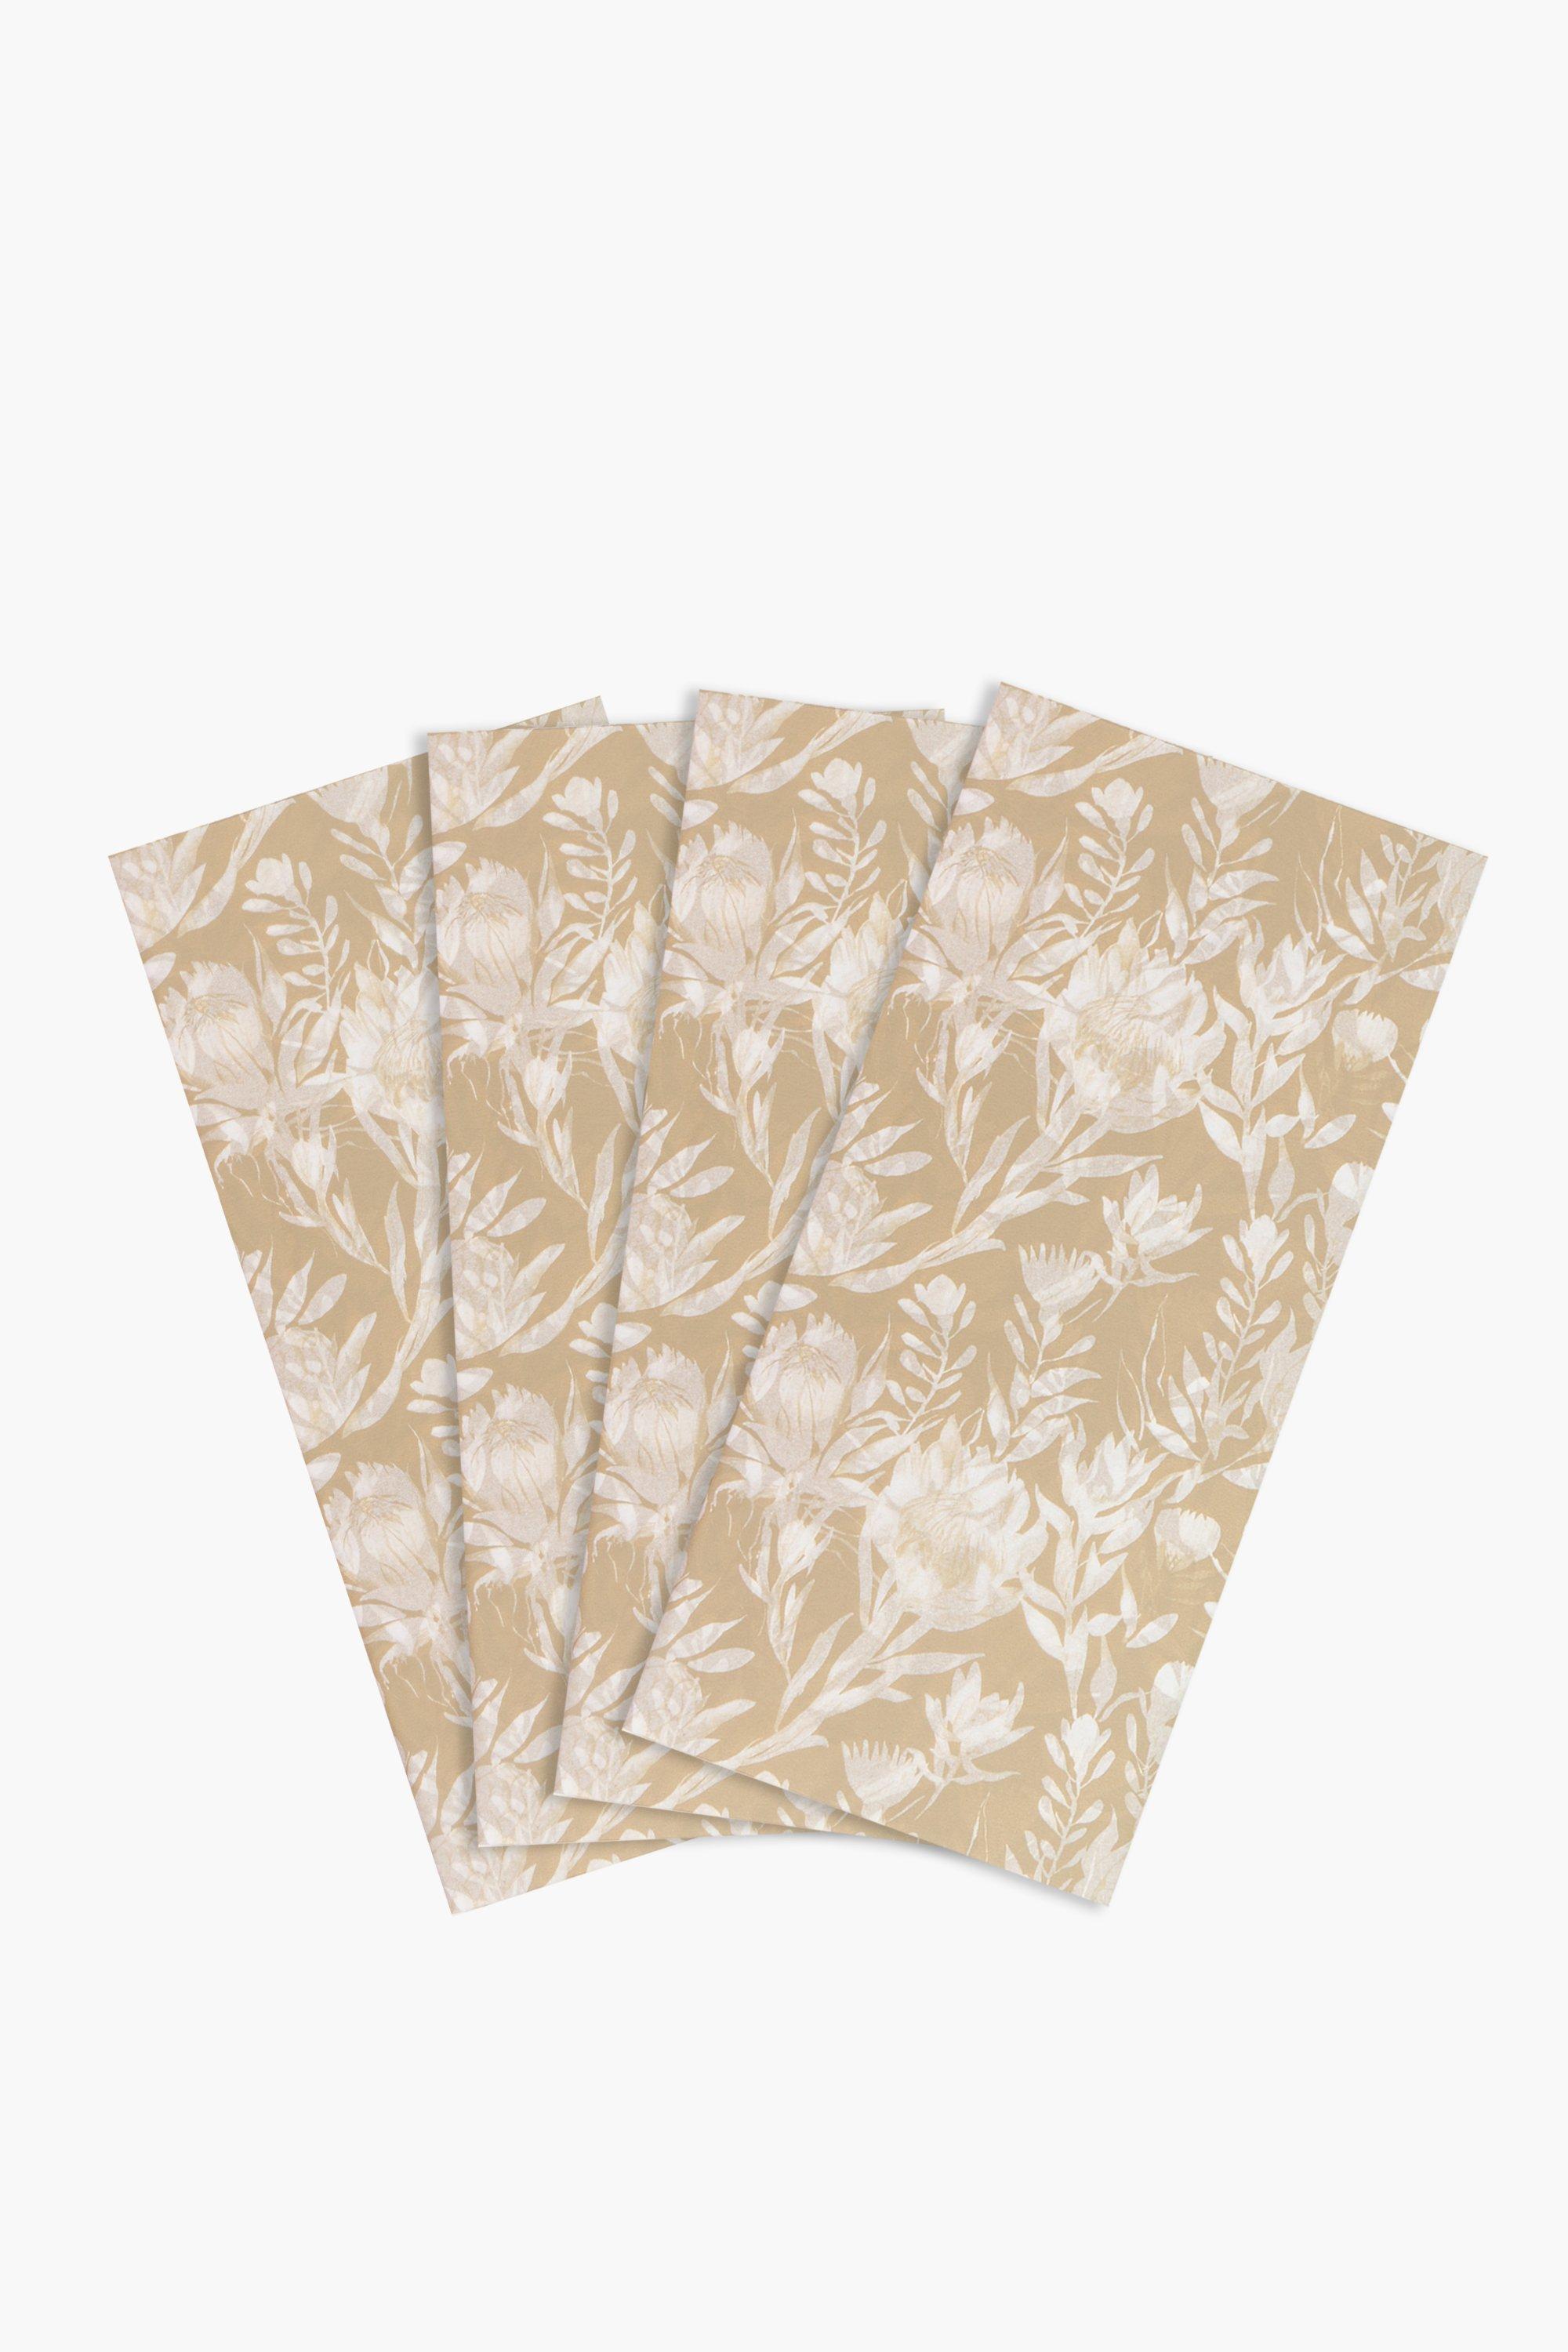 Gold Leaf Tissue Paper